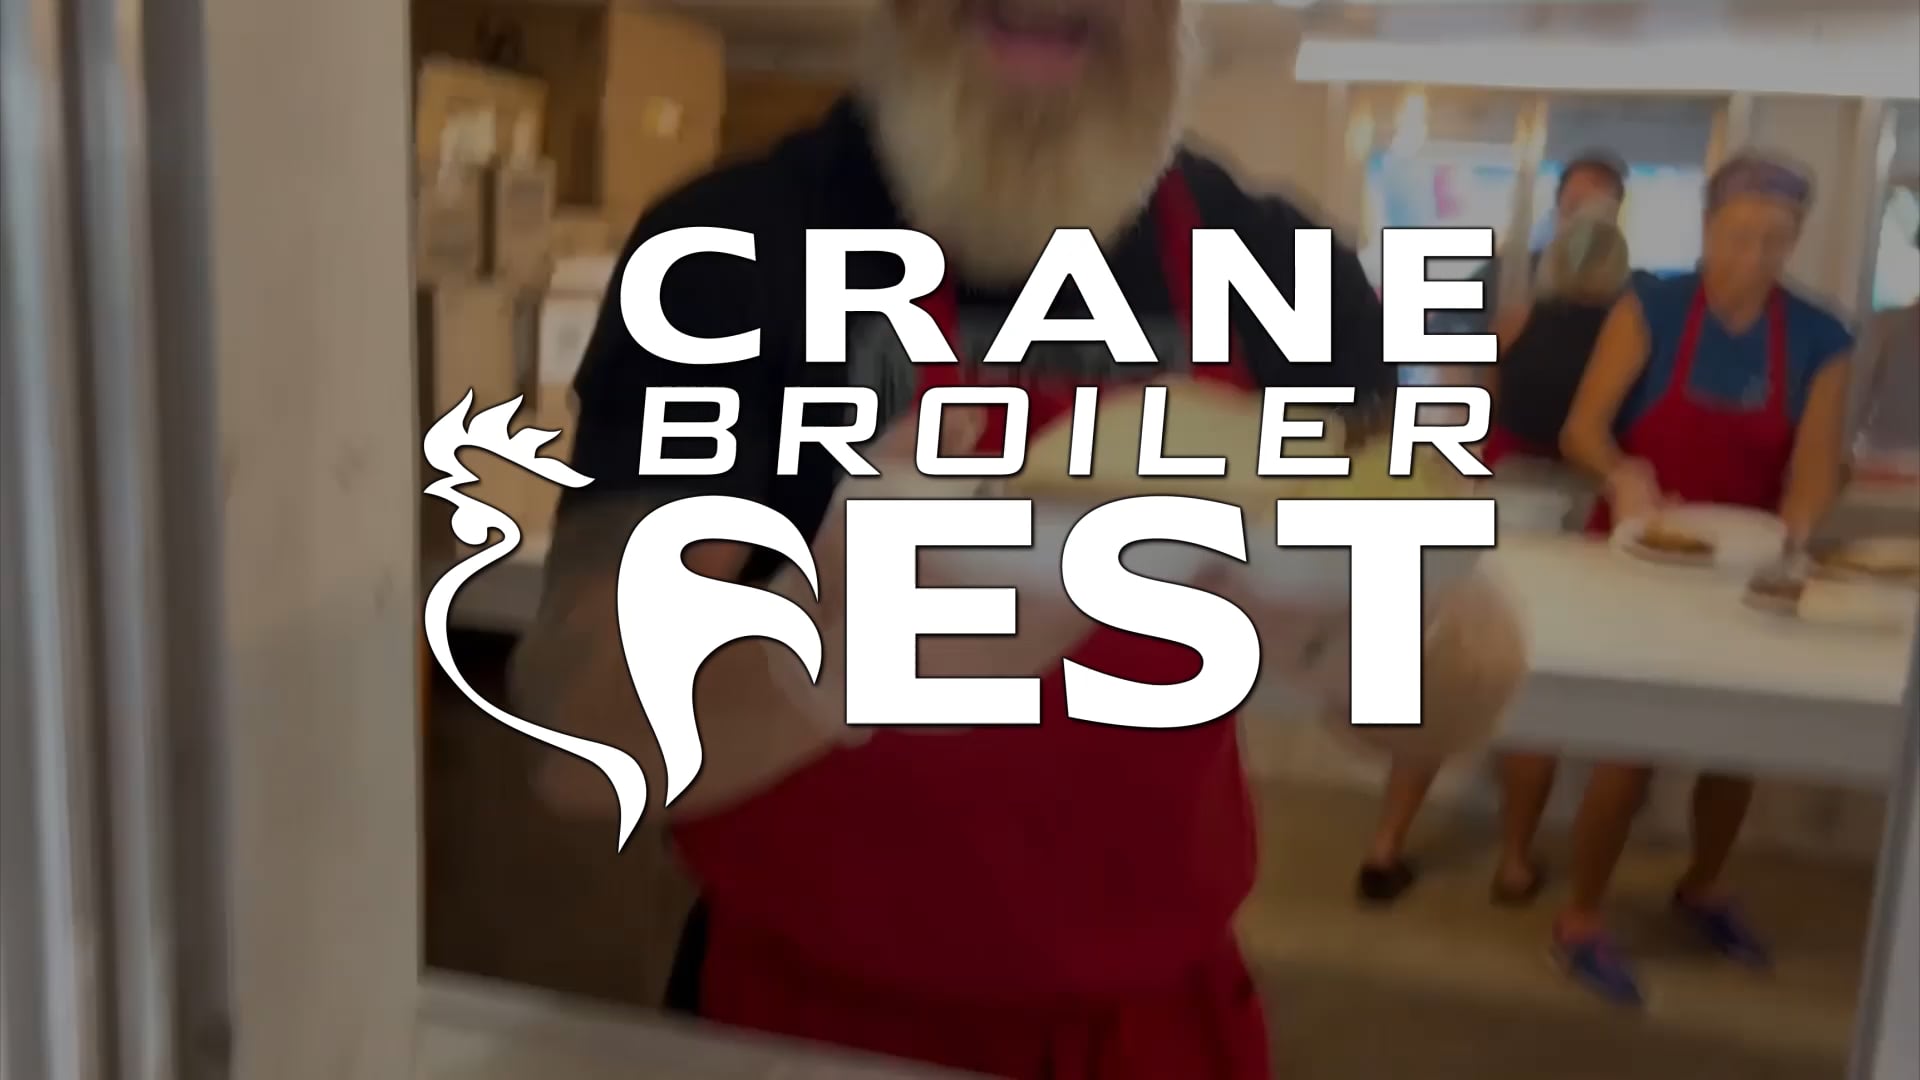 Crane Broiler Fest on Vimeo